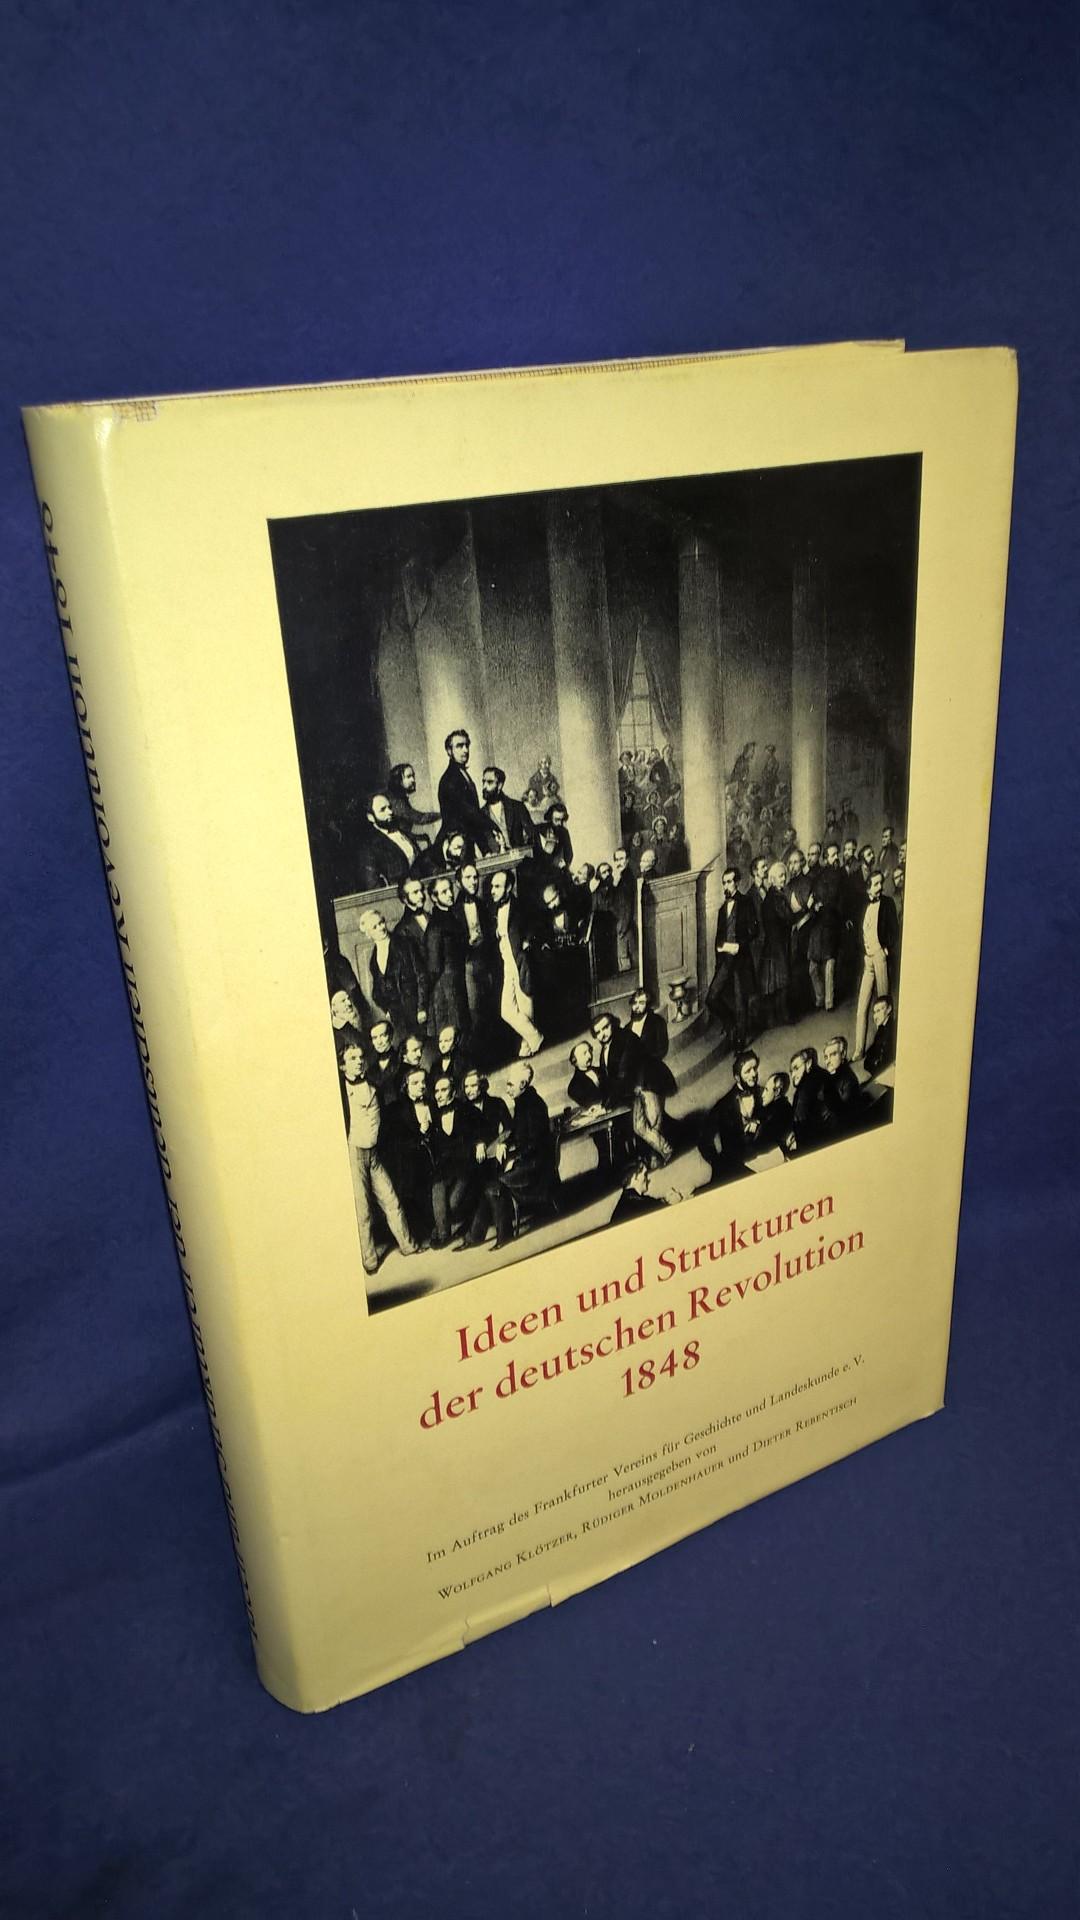 Ideen und Strukturen der deutschen Revolution 1848.